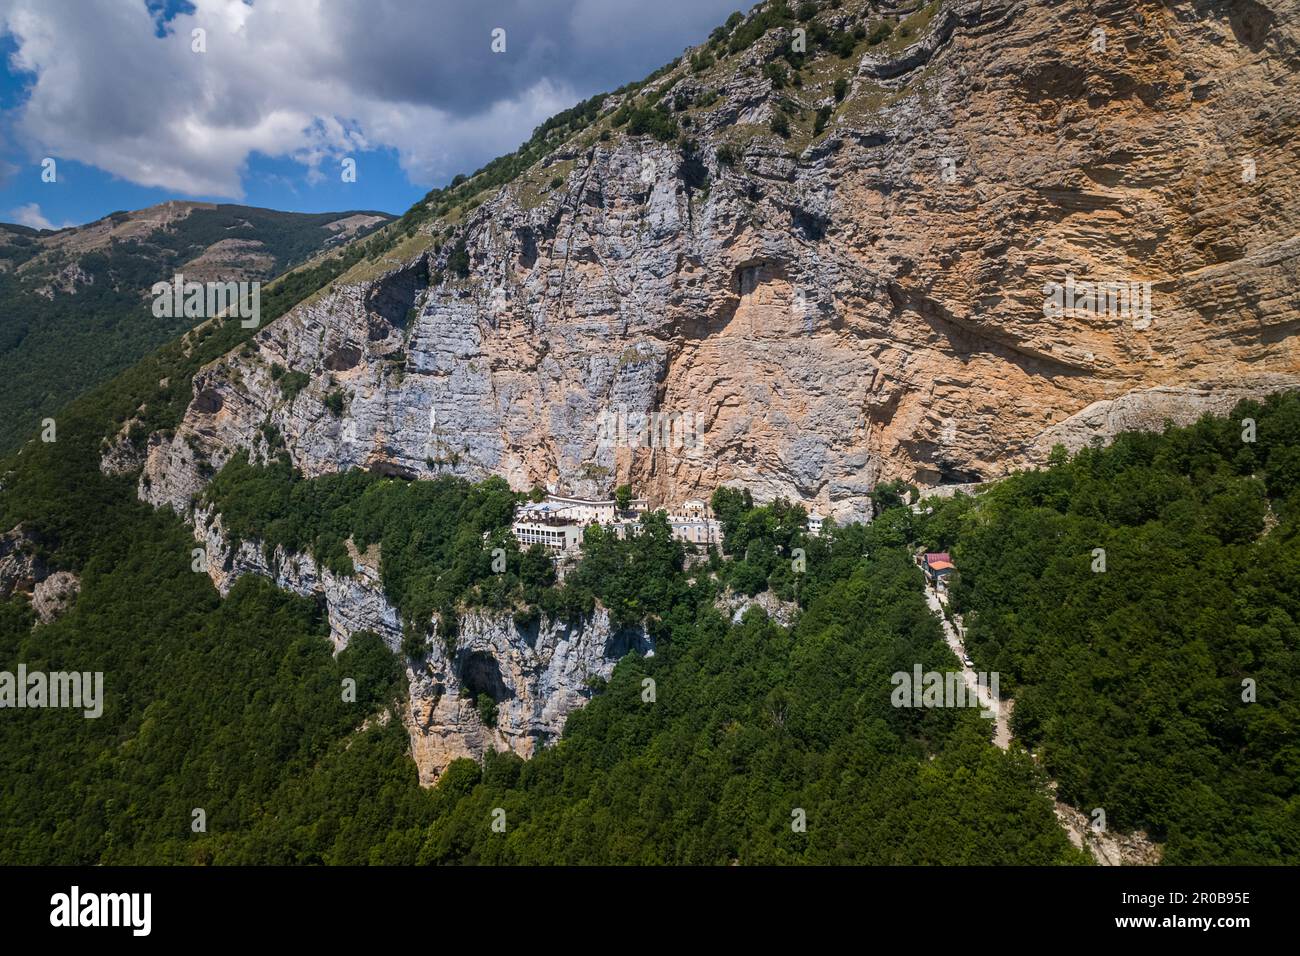 Veduta aerea del Santuario della Santissima Trinità di Vallepietra e della parete rocciosa sovrastante. Vallepietra, Lazio, Italia, Europa Foto Stock